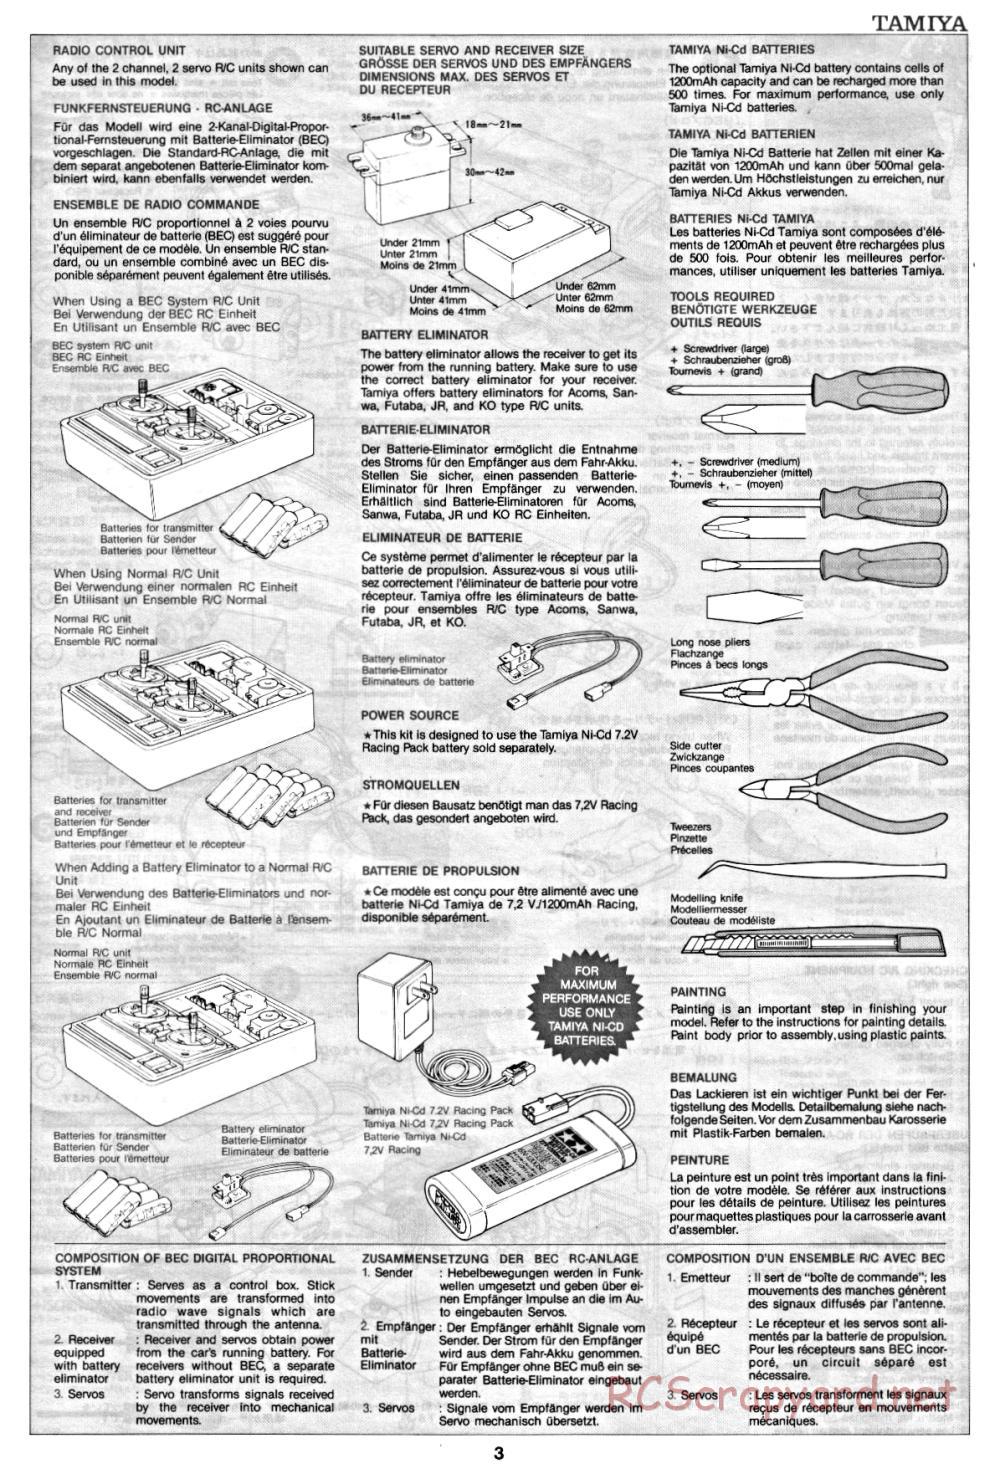 Tamiya - Clod Buster - 58065 - Manual - Page 3